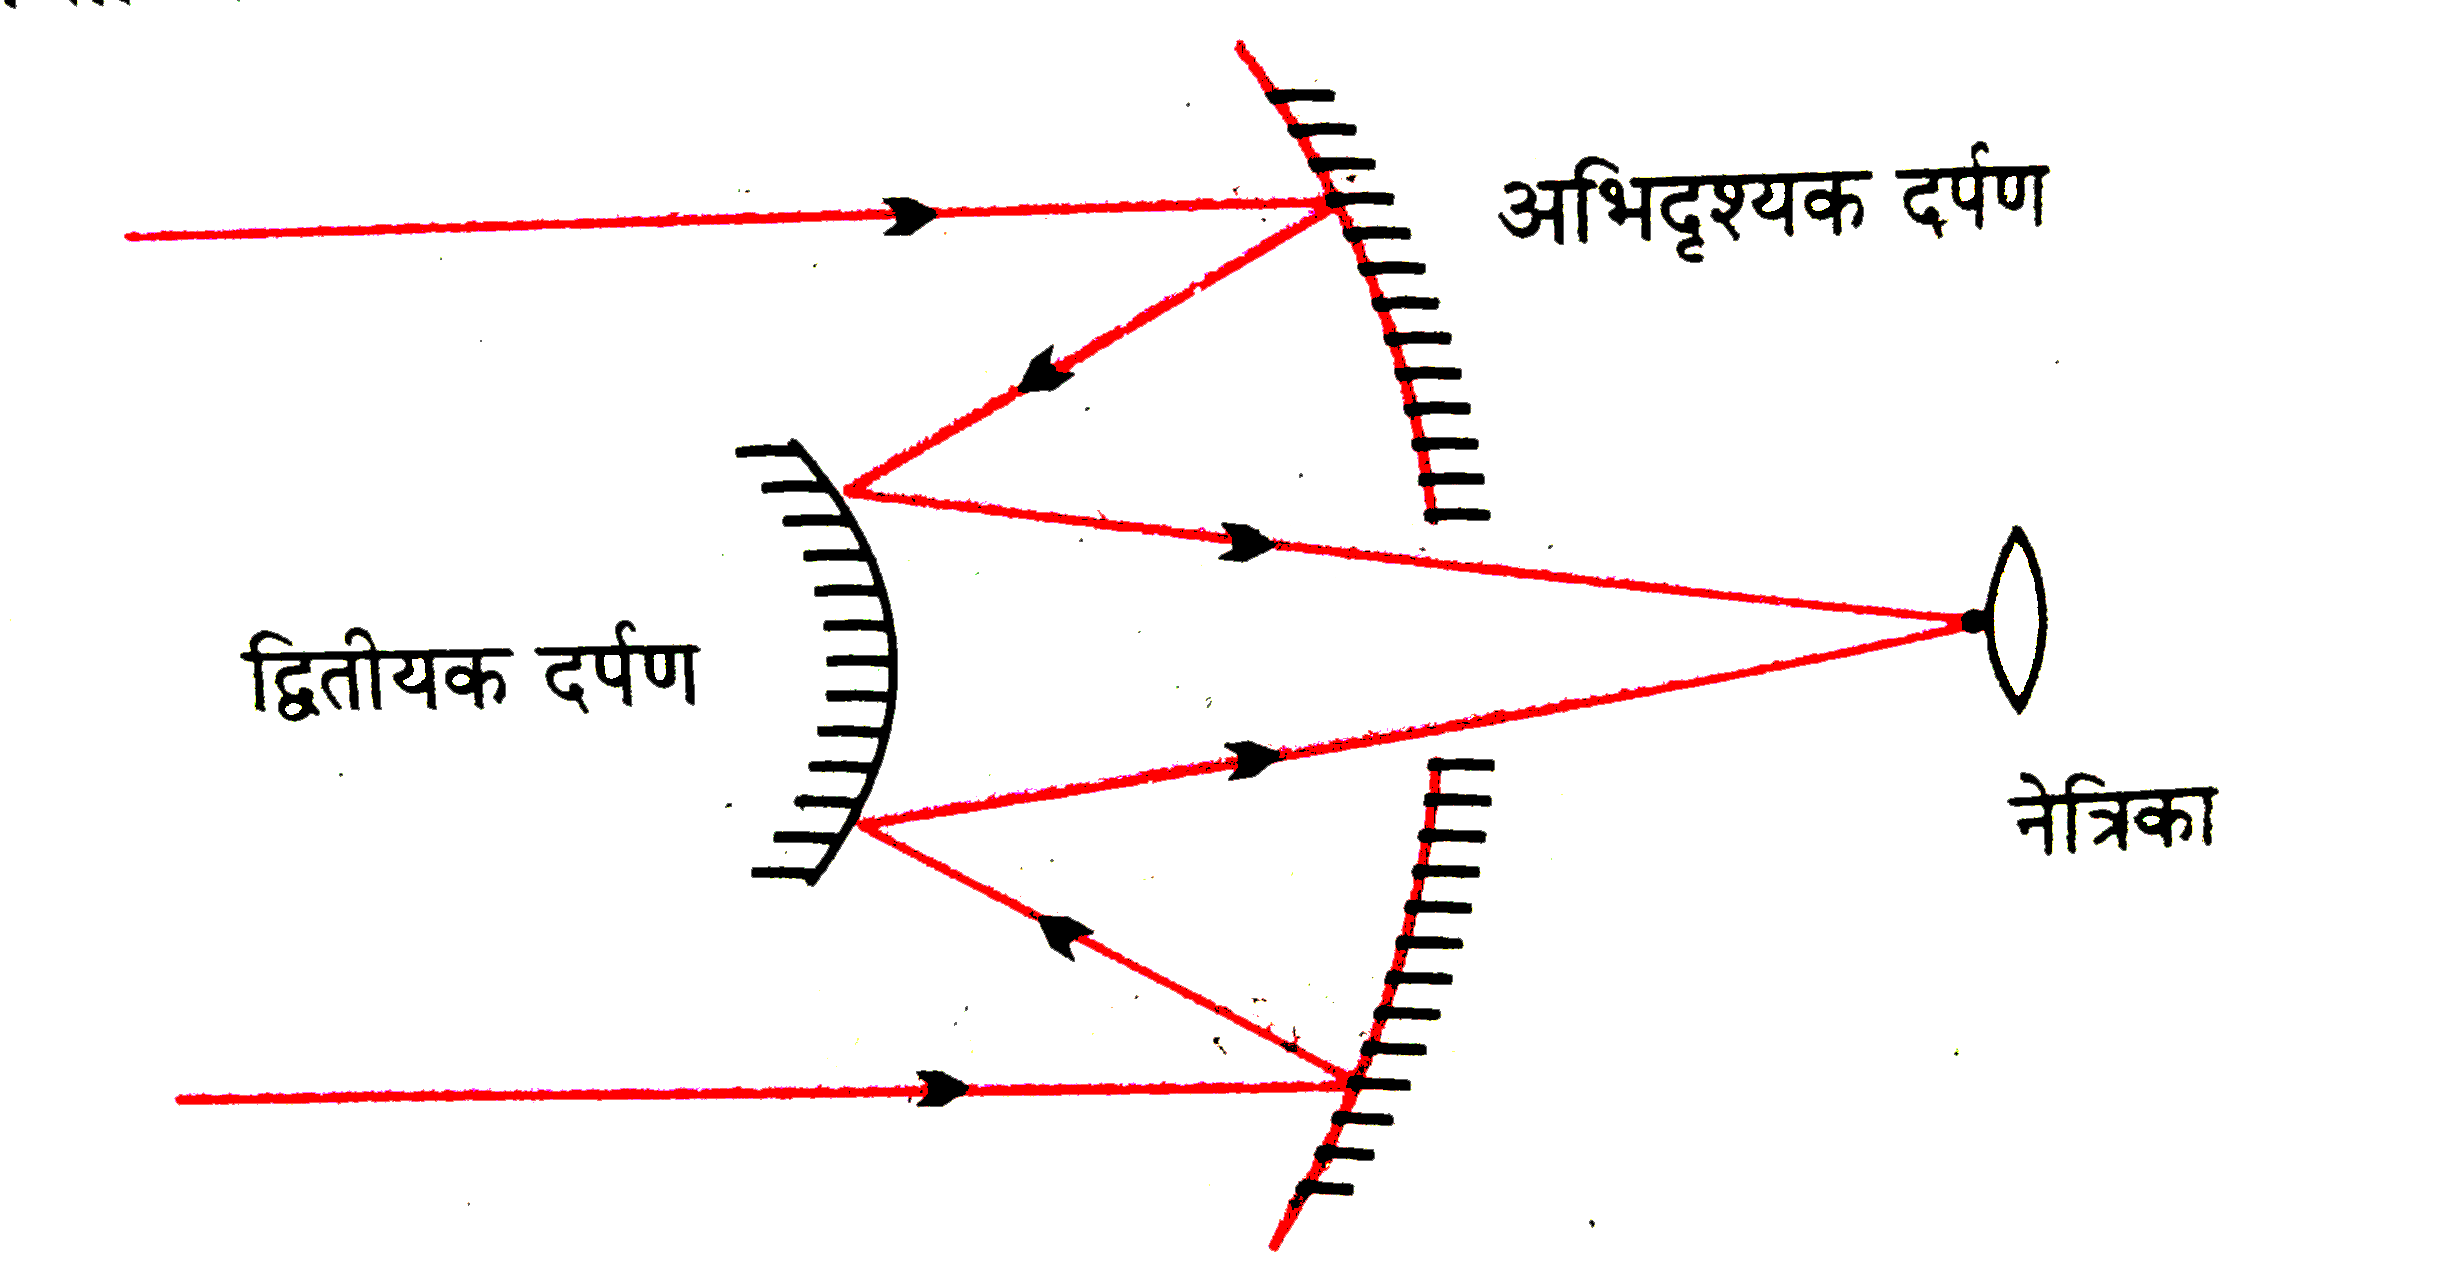 किसी कैसेग्रेन दूरबीन में चित्र में दर्शाए अनुसार दो दर्पणों का प्रयोग किया गया है । इस दूरबीन में दोनों दर्पण एक-दूसरे से 20 मिमी. दूर रखे गए हैं । यदि बड़े दर्पण की वक्रता त्रिज्या 220 मिमी. हो तथा छोटे दर्पण की वक्रता त्रिज्या 140 मिमी. हो तो अनंत पर रखे किसी बिंब का अंतिम प्रतिबिंब कहाँ बनेगा ?